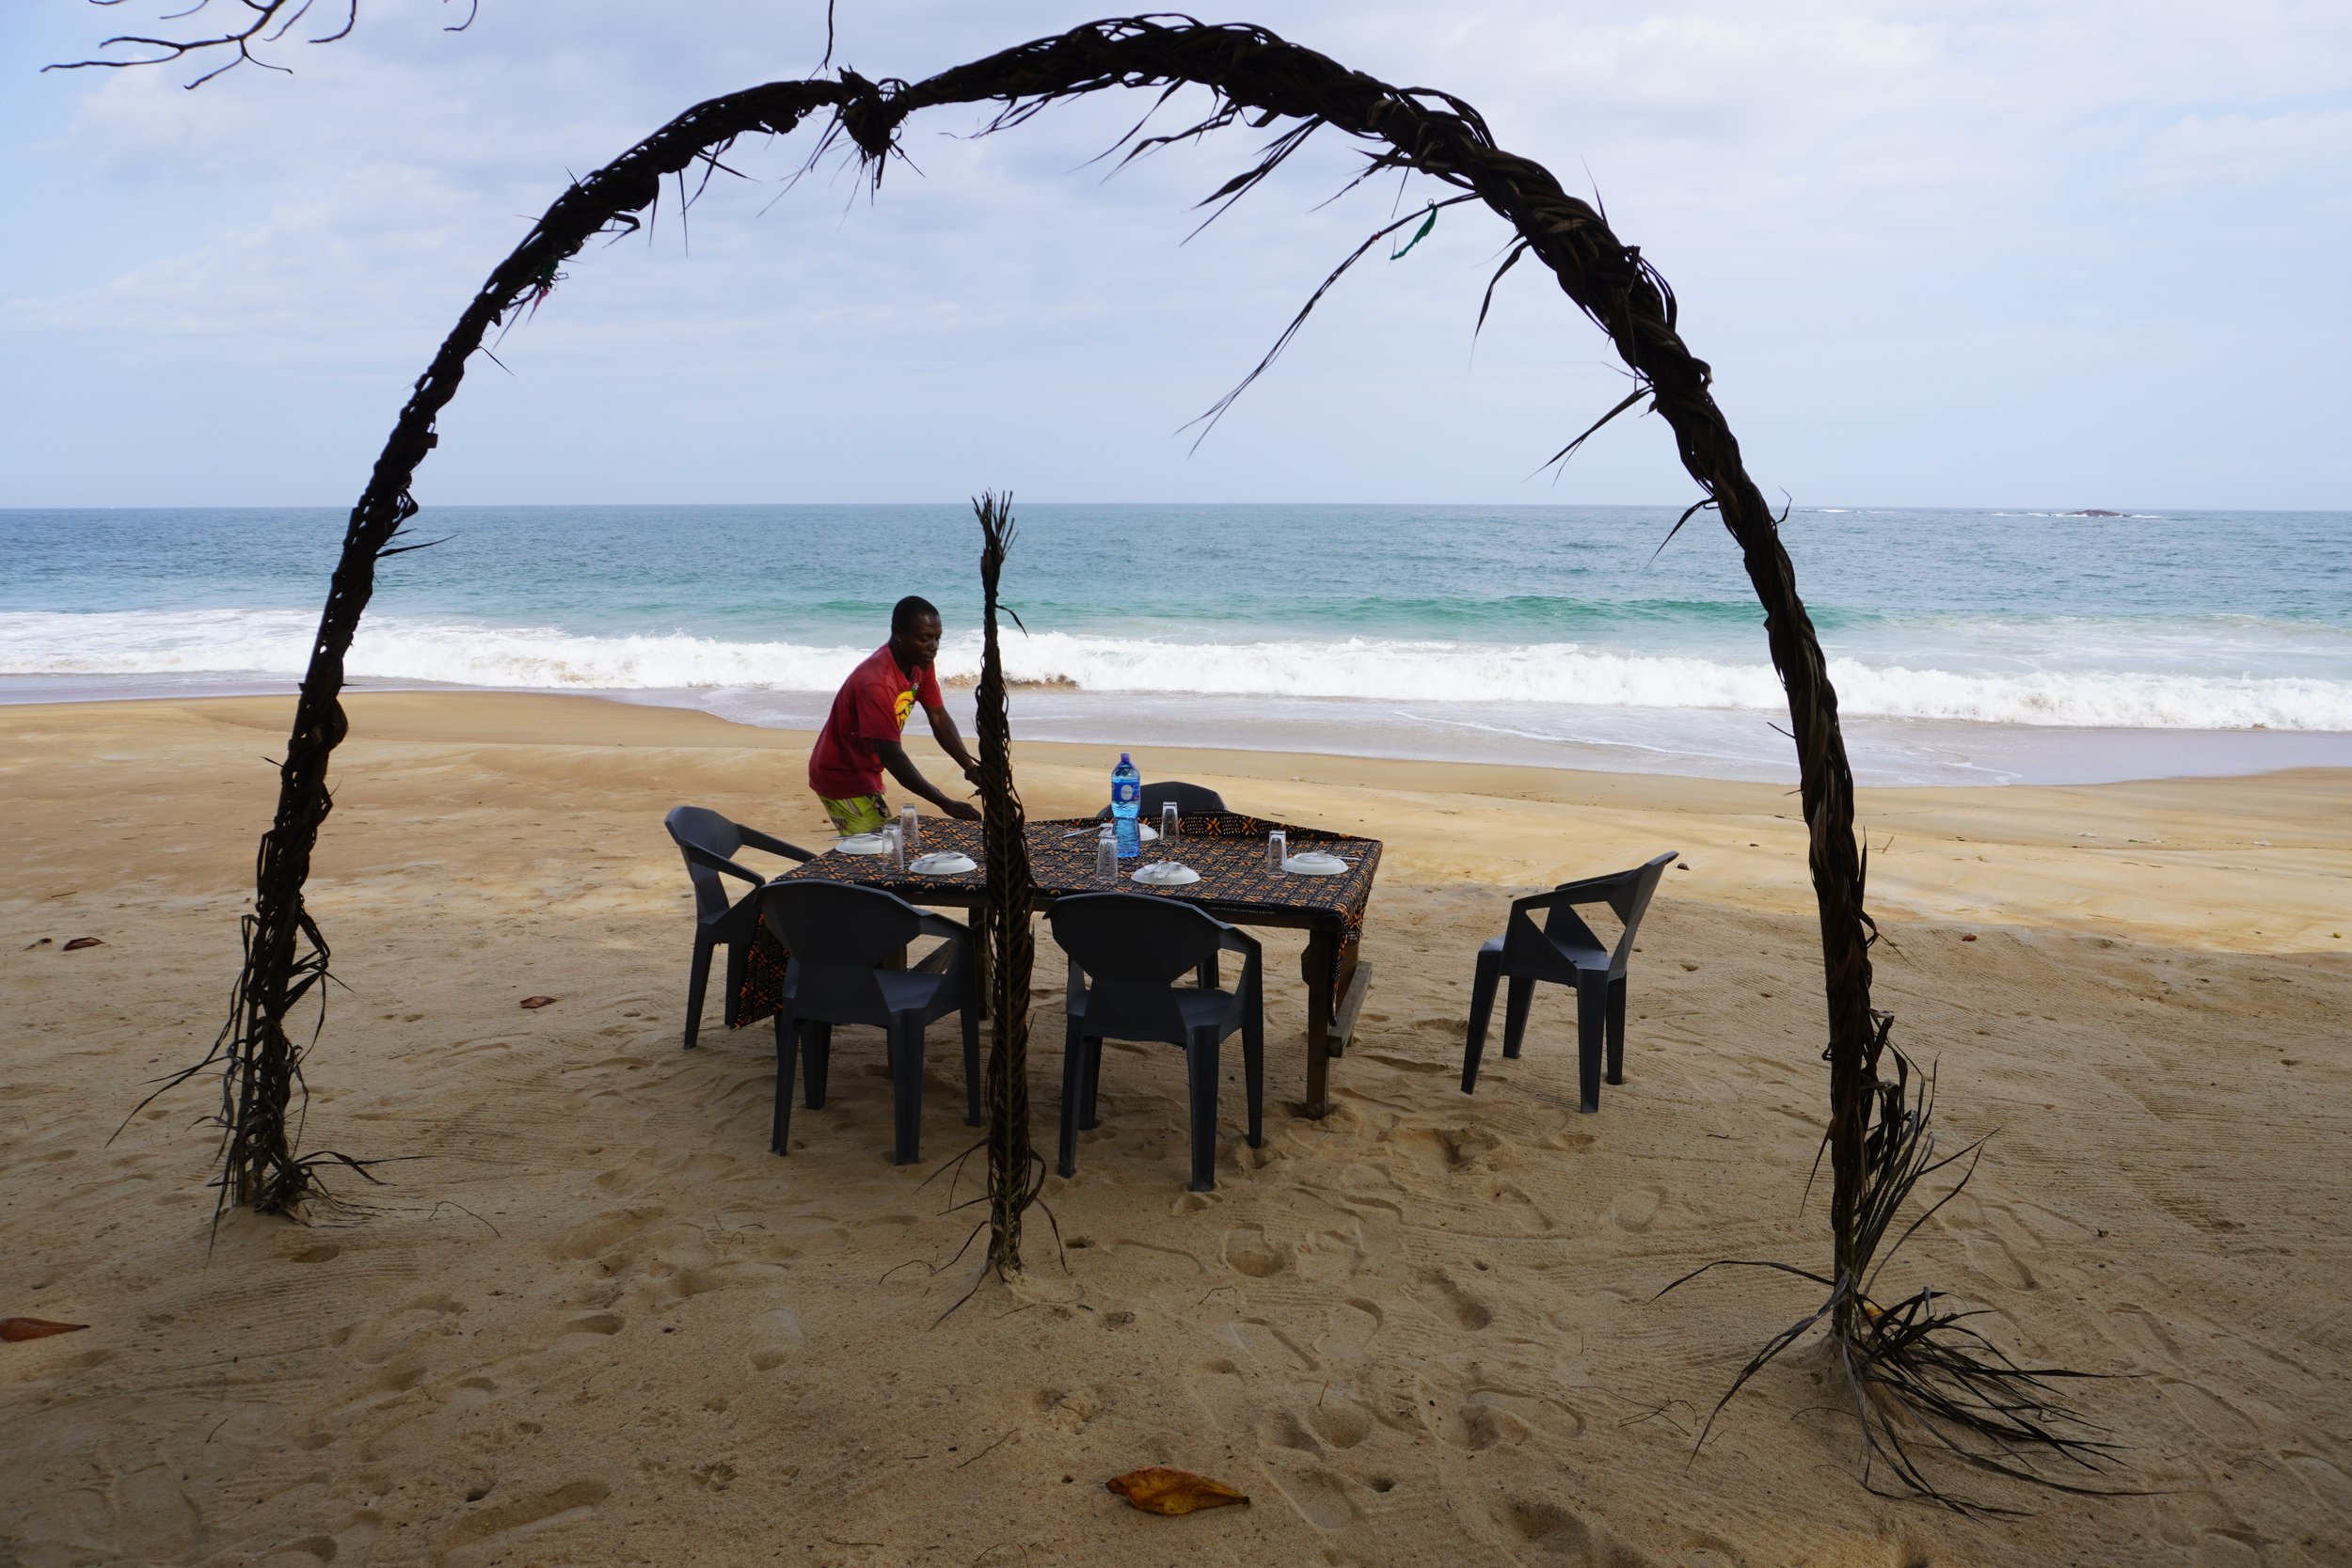  Sur la plage de Roc, a deux pas de l’écolodge, Prince Douh, musicien et cuisinier, met la table pour les invités d’aujourd’hui. Il a préparé du poulet sauce tomate et de la noix de palmier avec du riz blanc.  